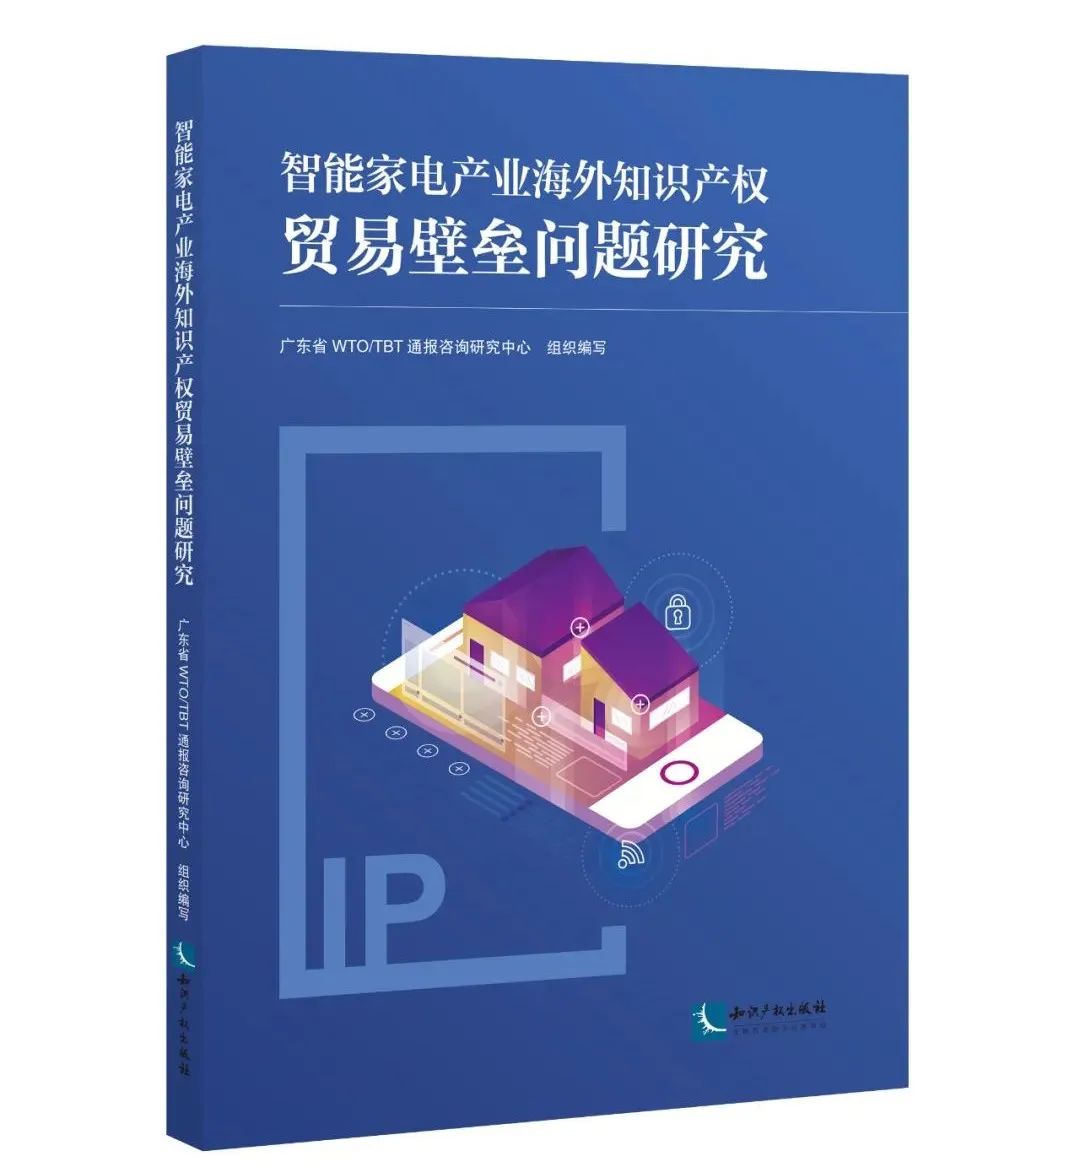 新书推荐 | 2023中国知识产权年会推荐书单